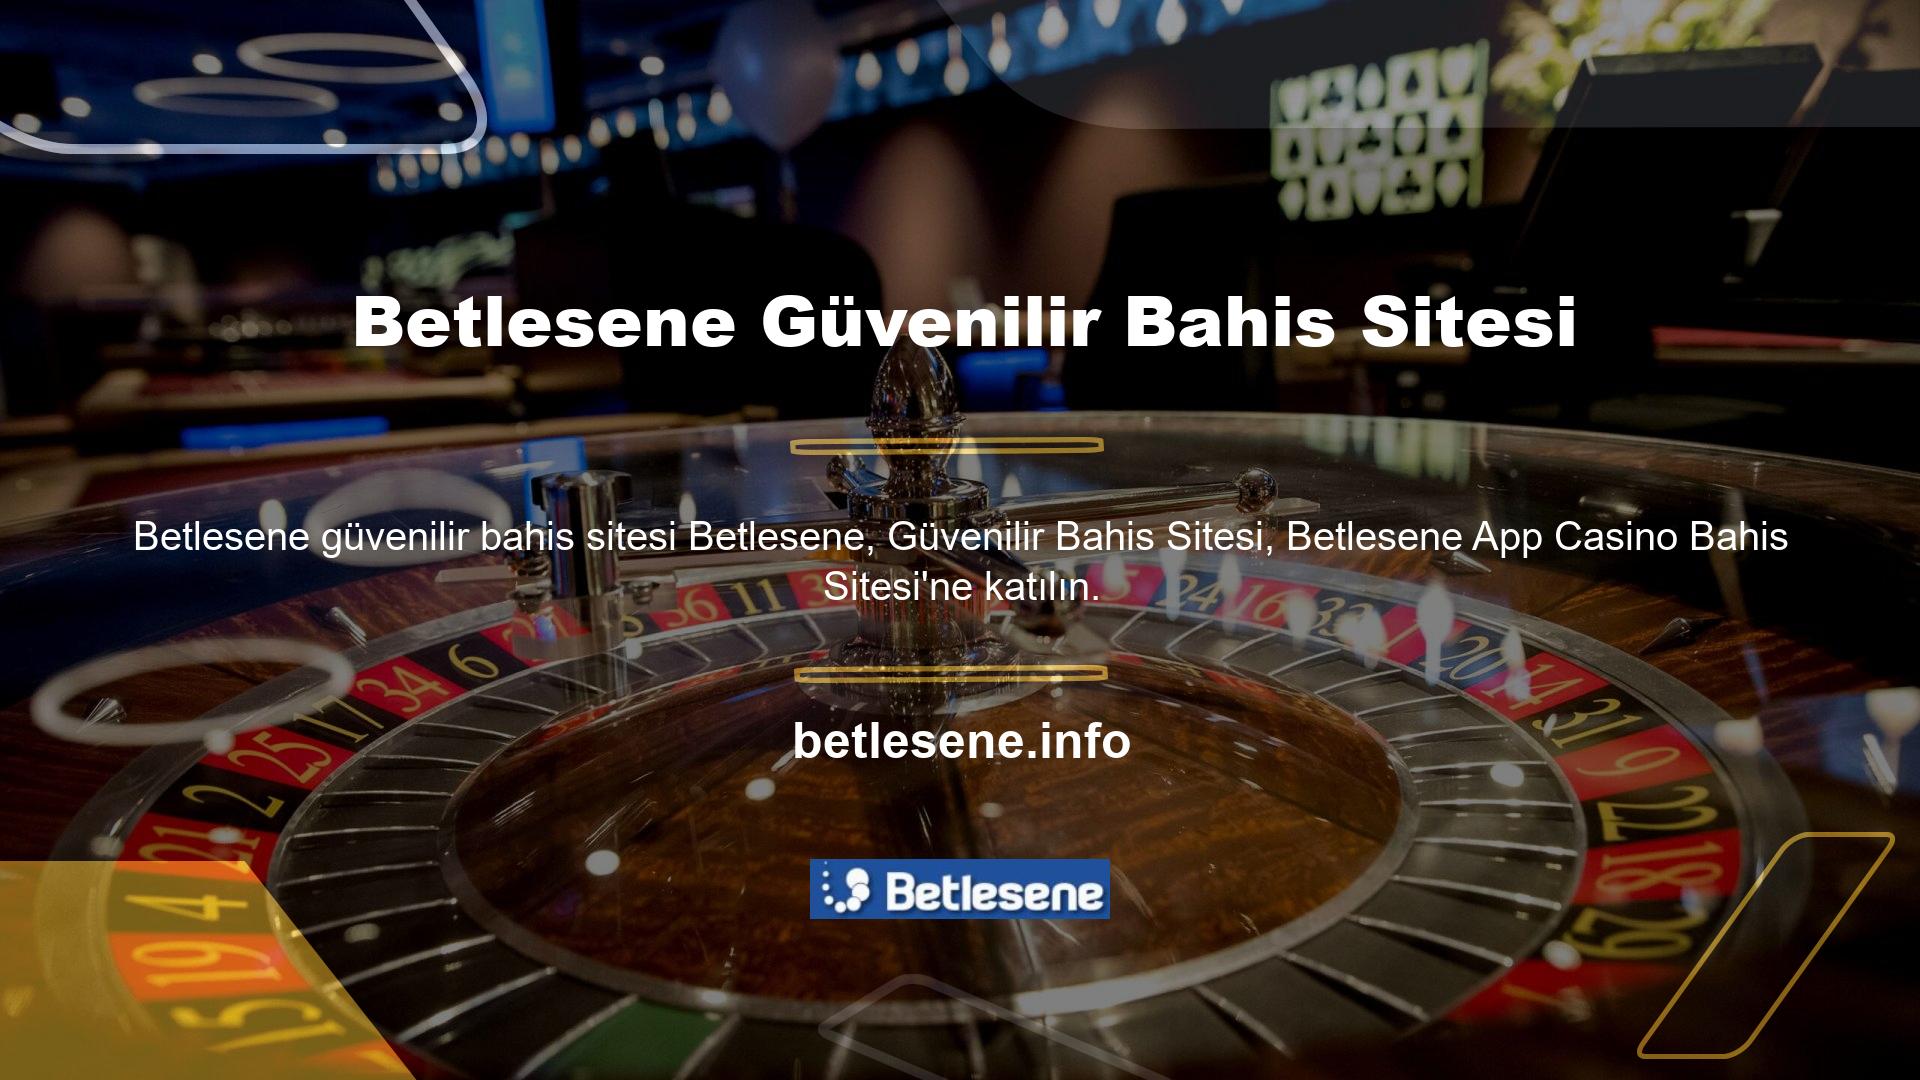 Betlesene, ülkenin önde gelen çevrimiçi blackjack şirketlerinden biridir